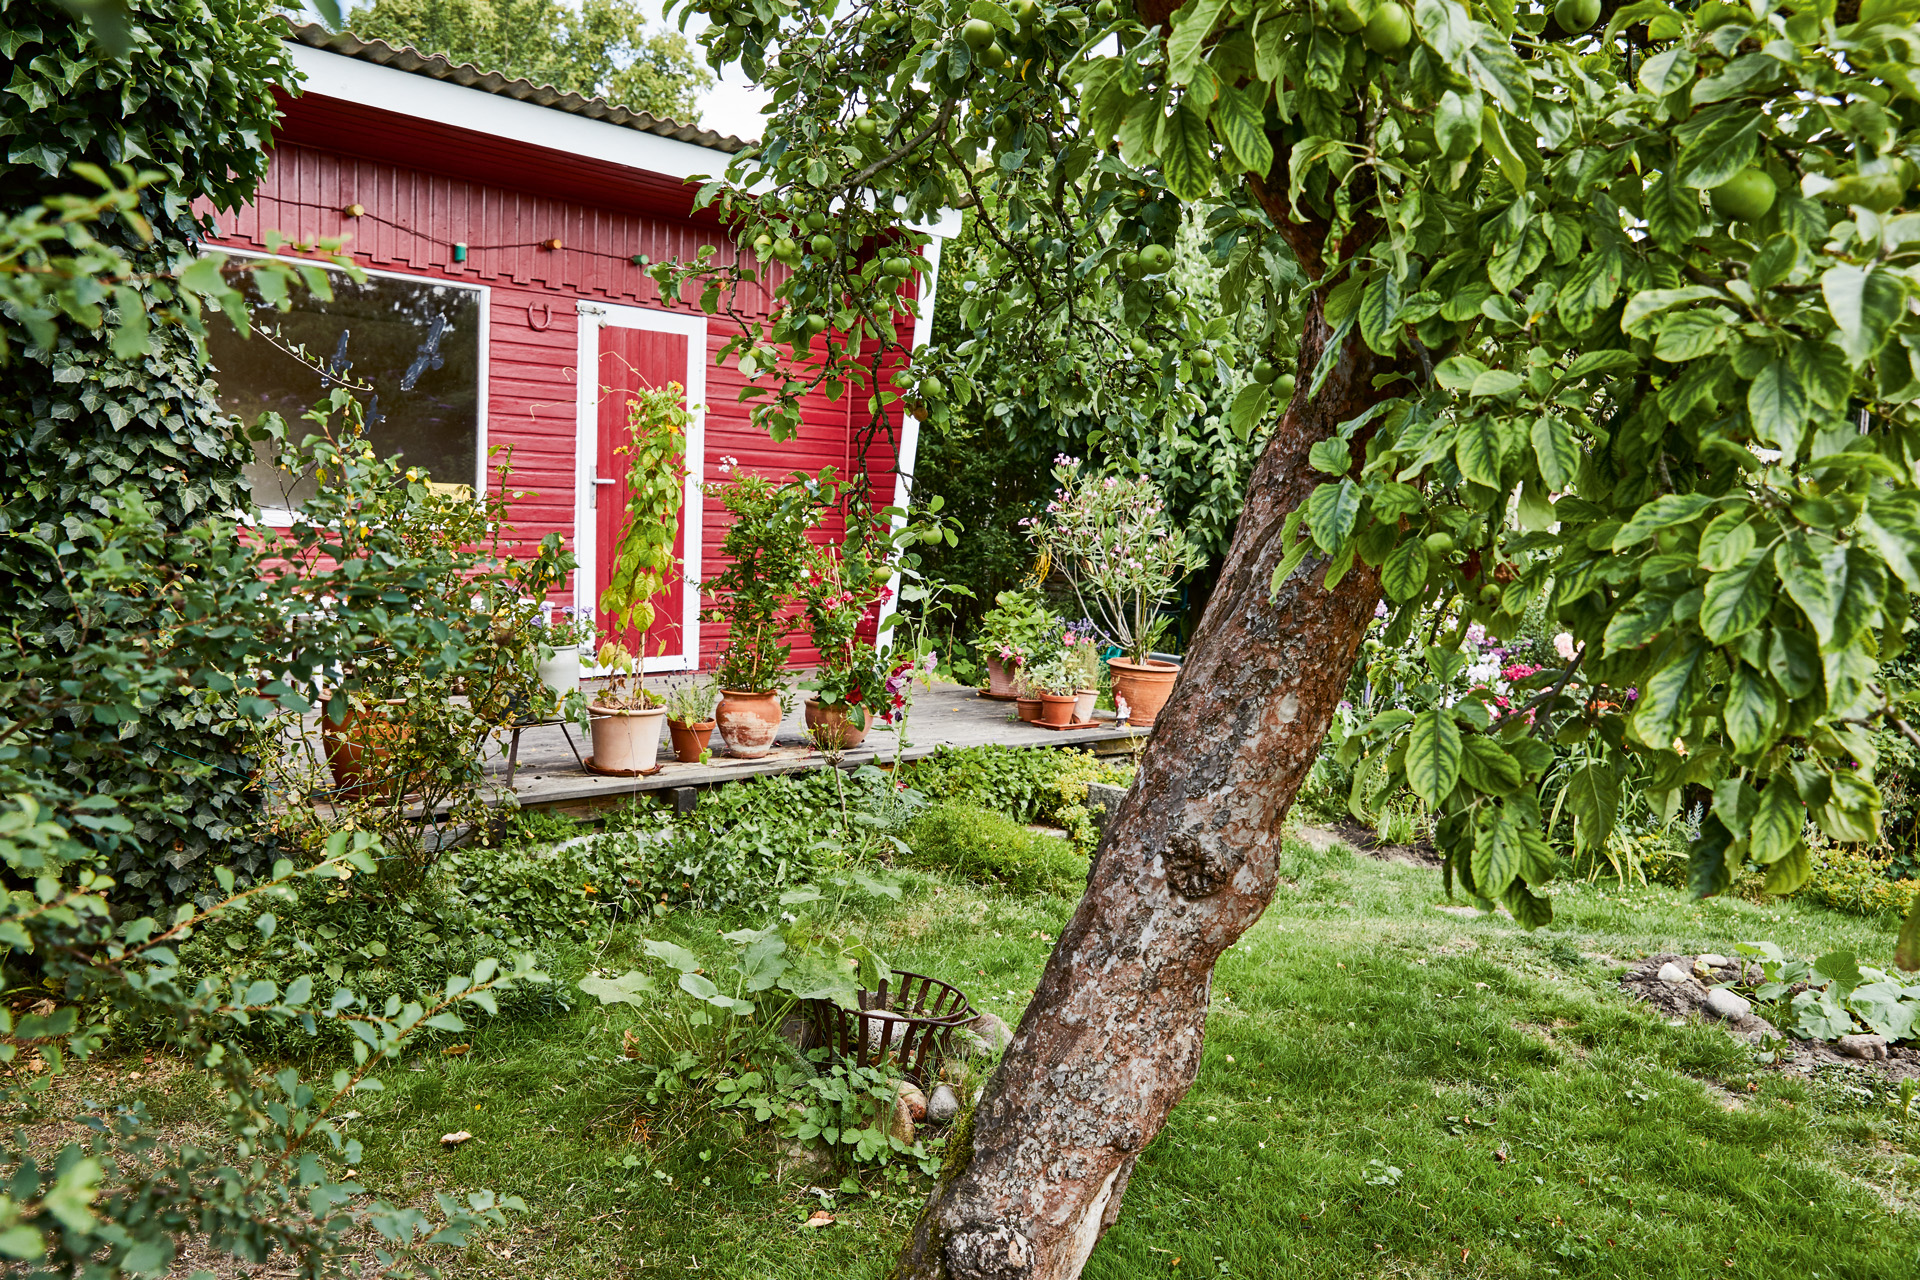 Obstbaum in einem Garten vor einem roten Gartenhaus